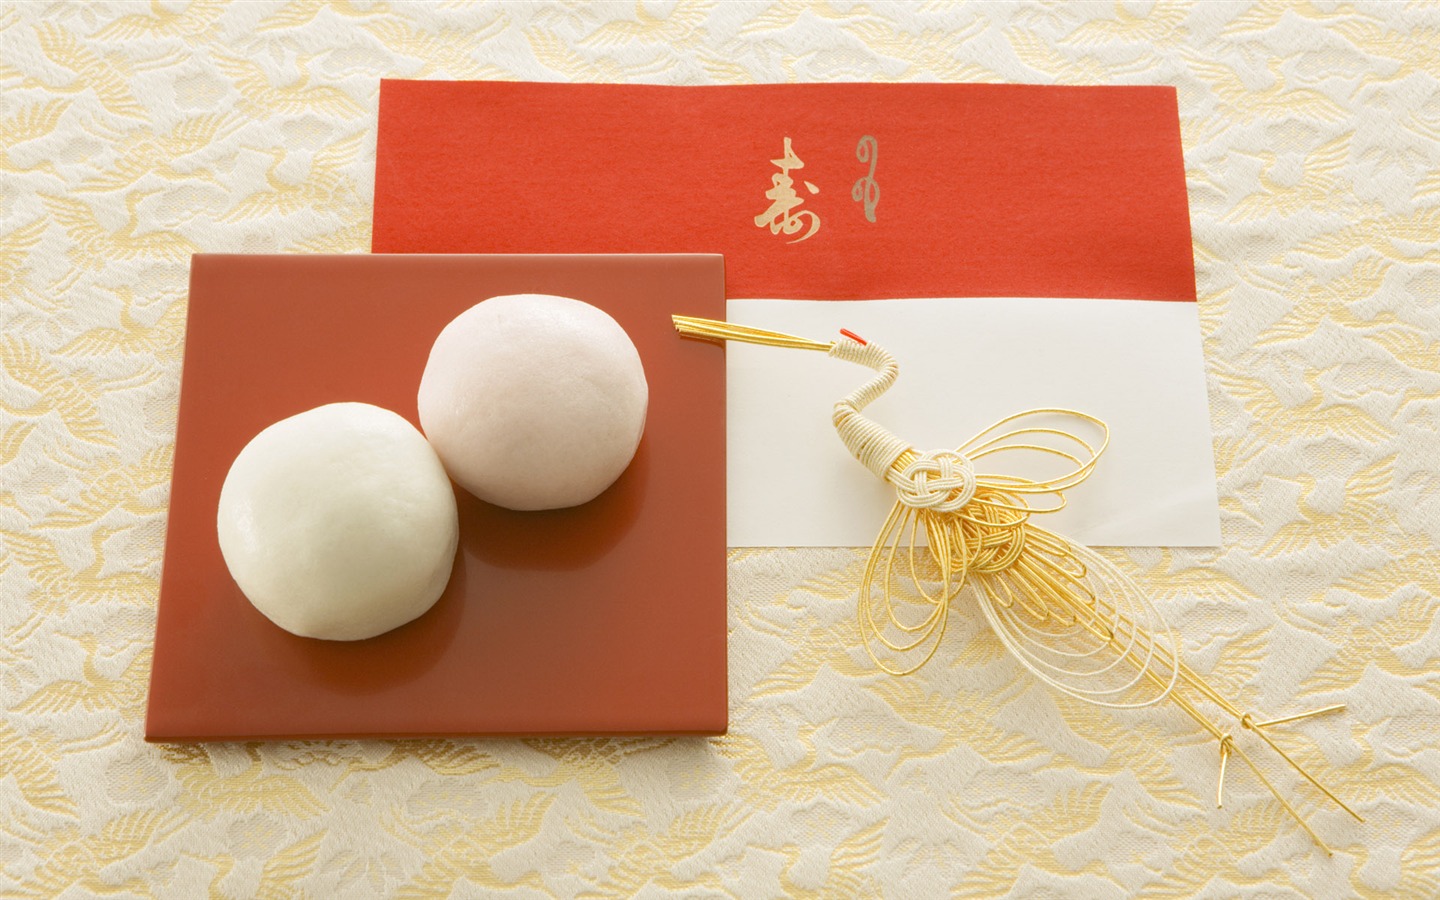 Fondos de año nuevo japonés Cultura (3) #13 - 1440x900